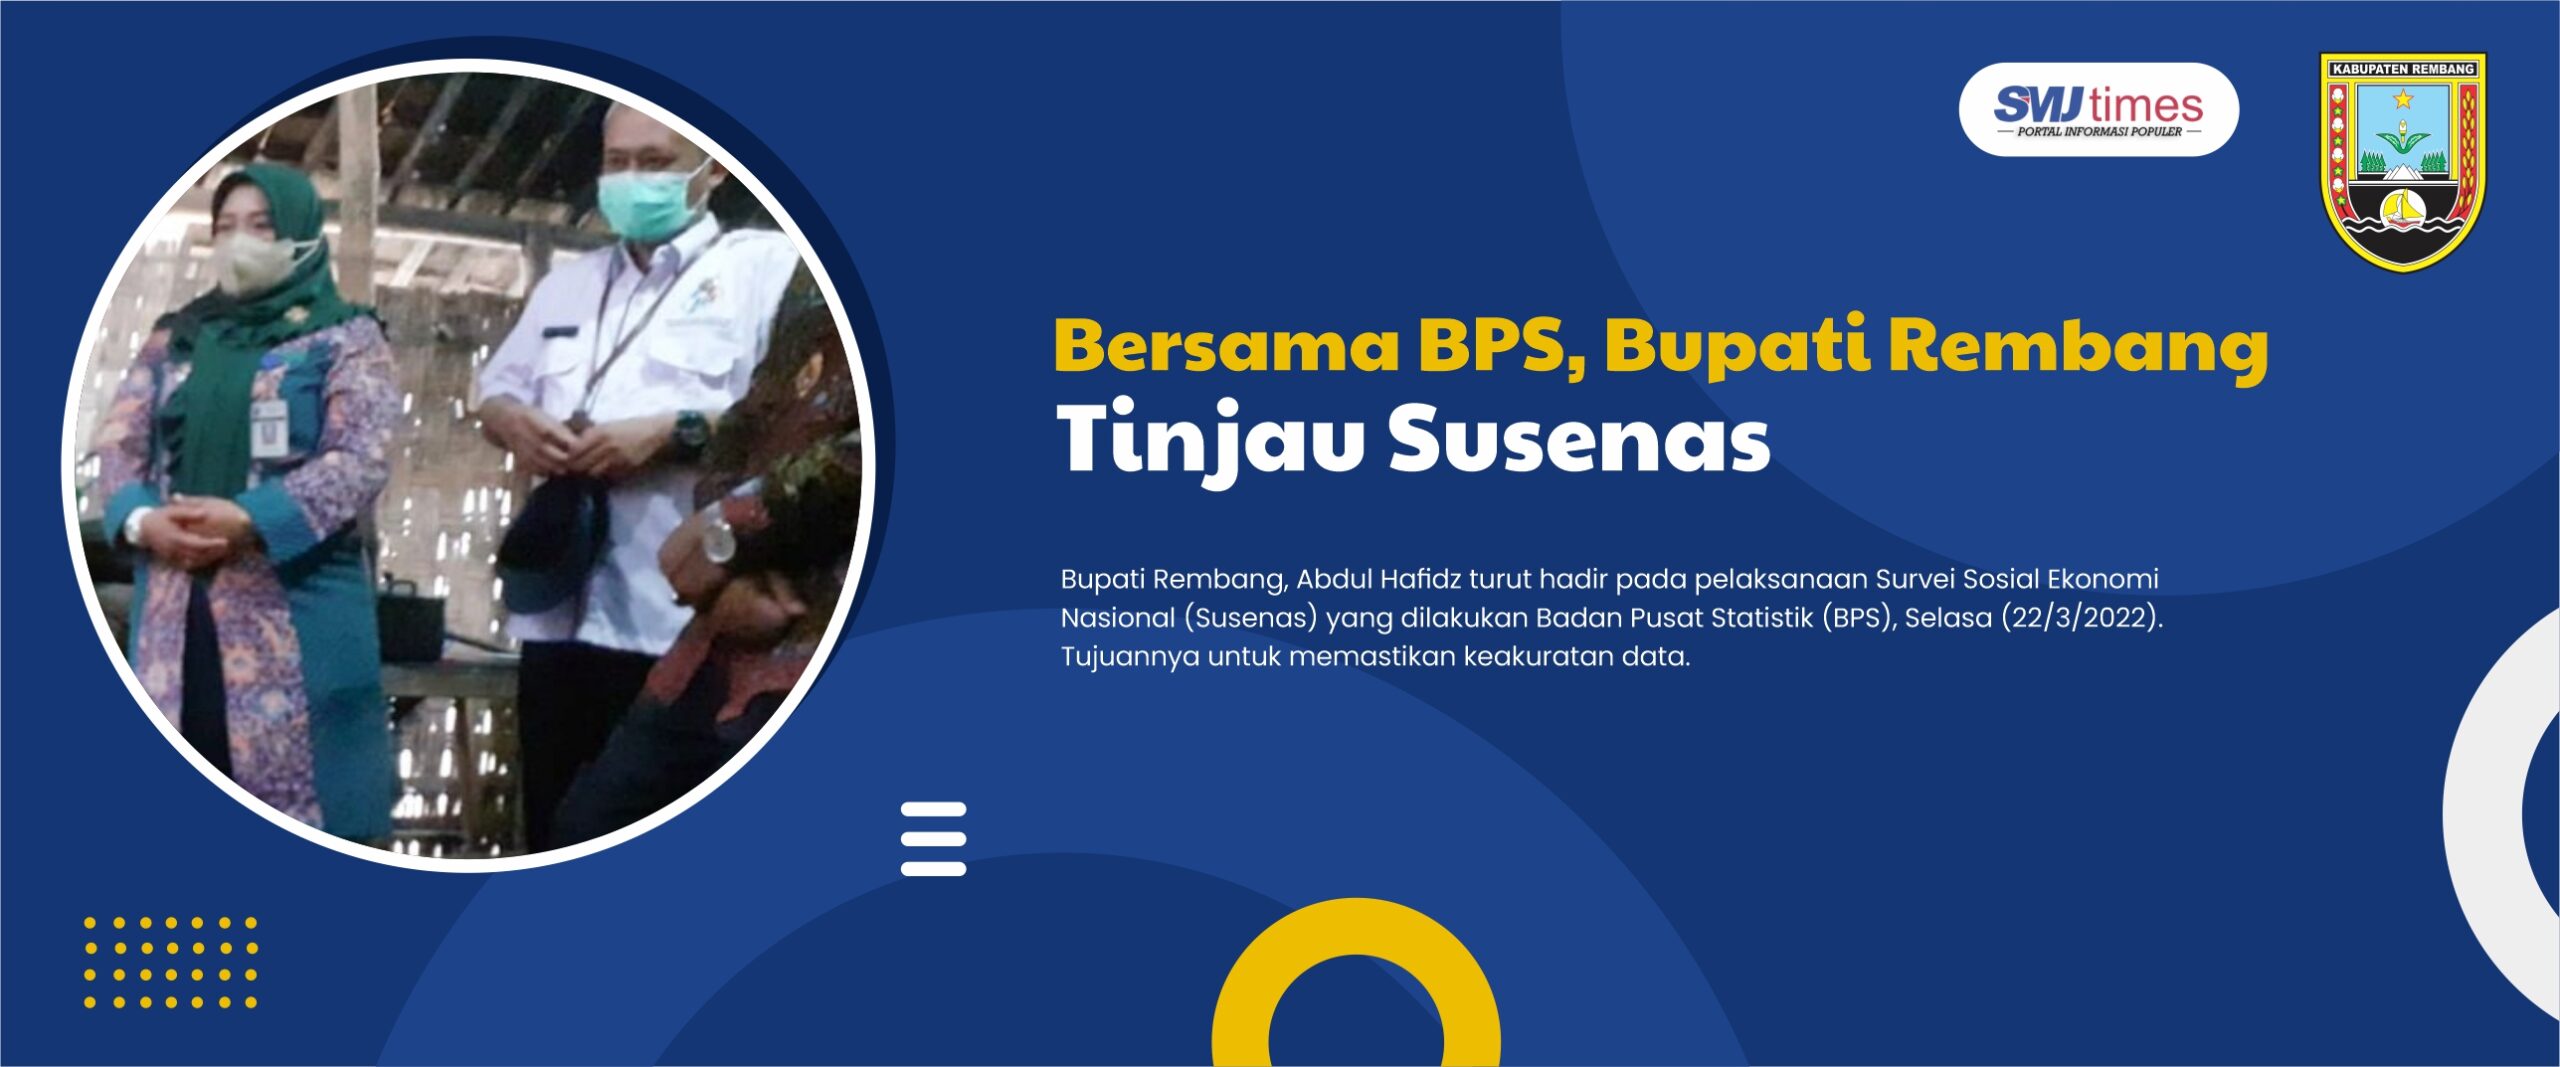 Bersama BPS, Bupati Rembang Tinjau Susenas